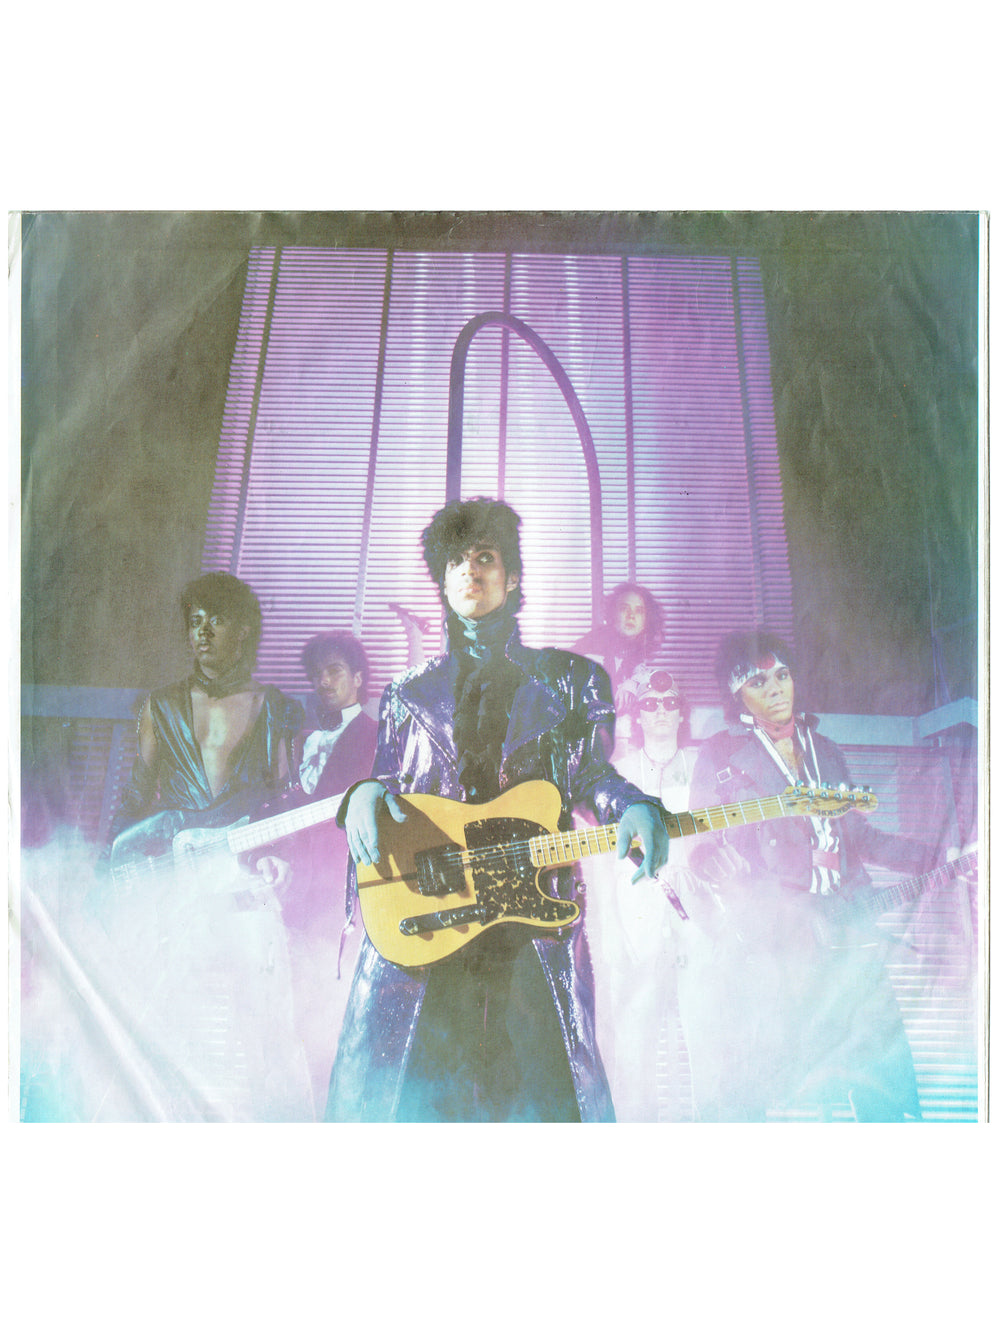 Prince & The Revolution 1999 Double Vinyl Album Original 1982 Release EU SMS